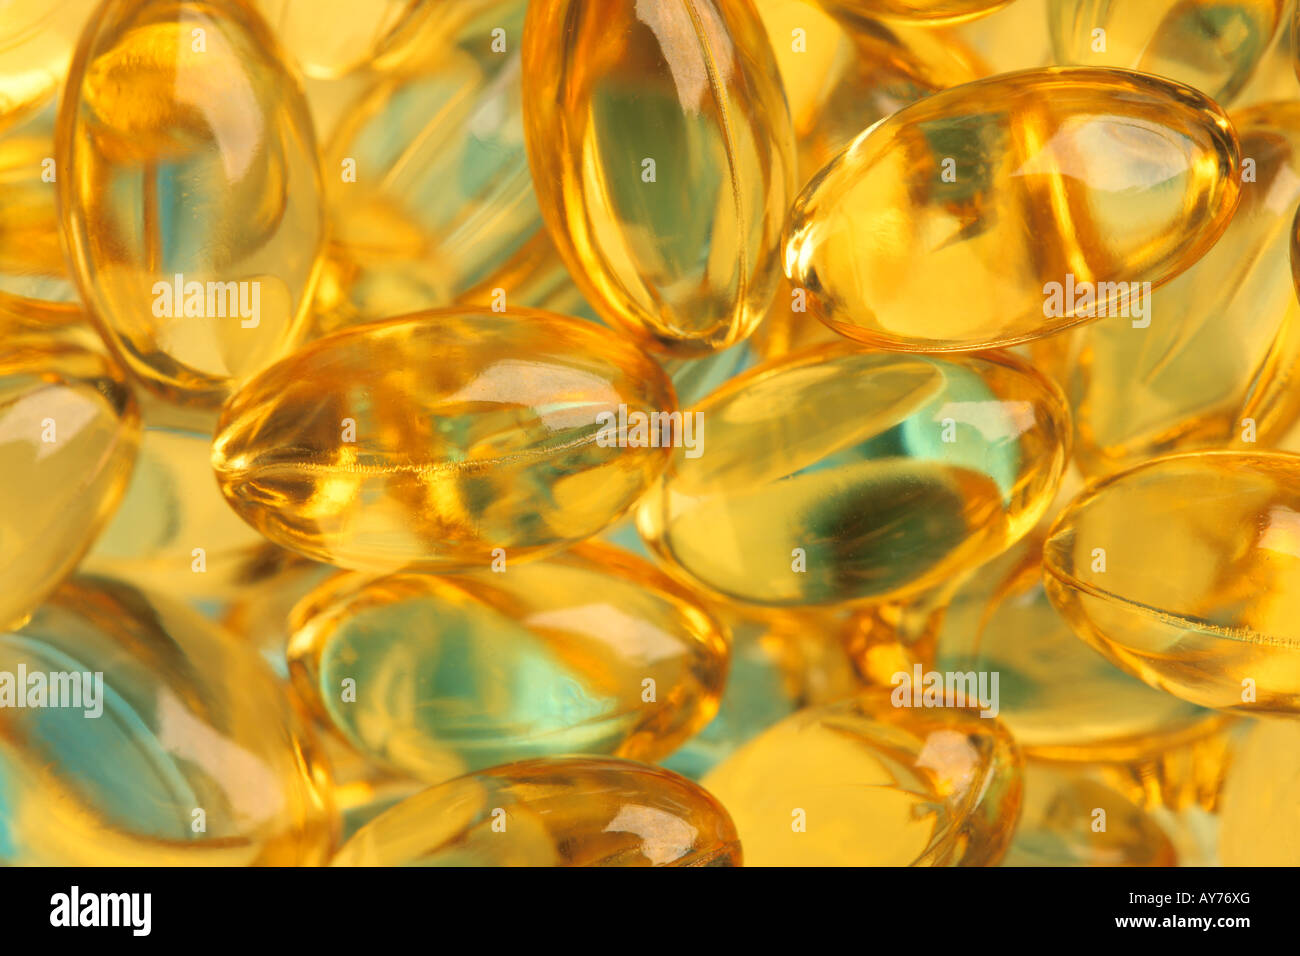 Pesce sano olio integratori nutrizionali pillole close up macro Foto Stock